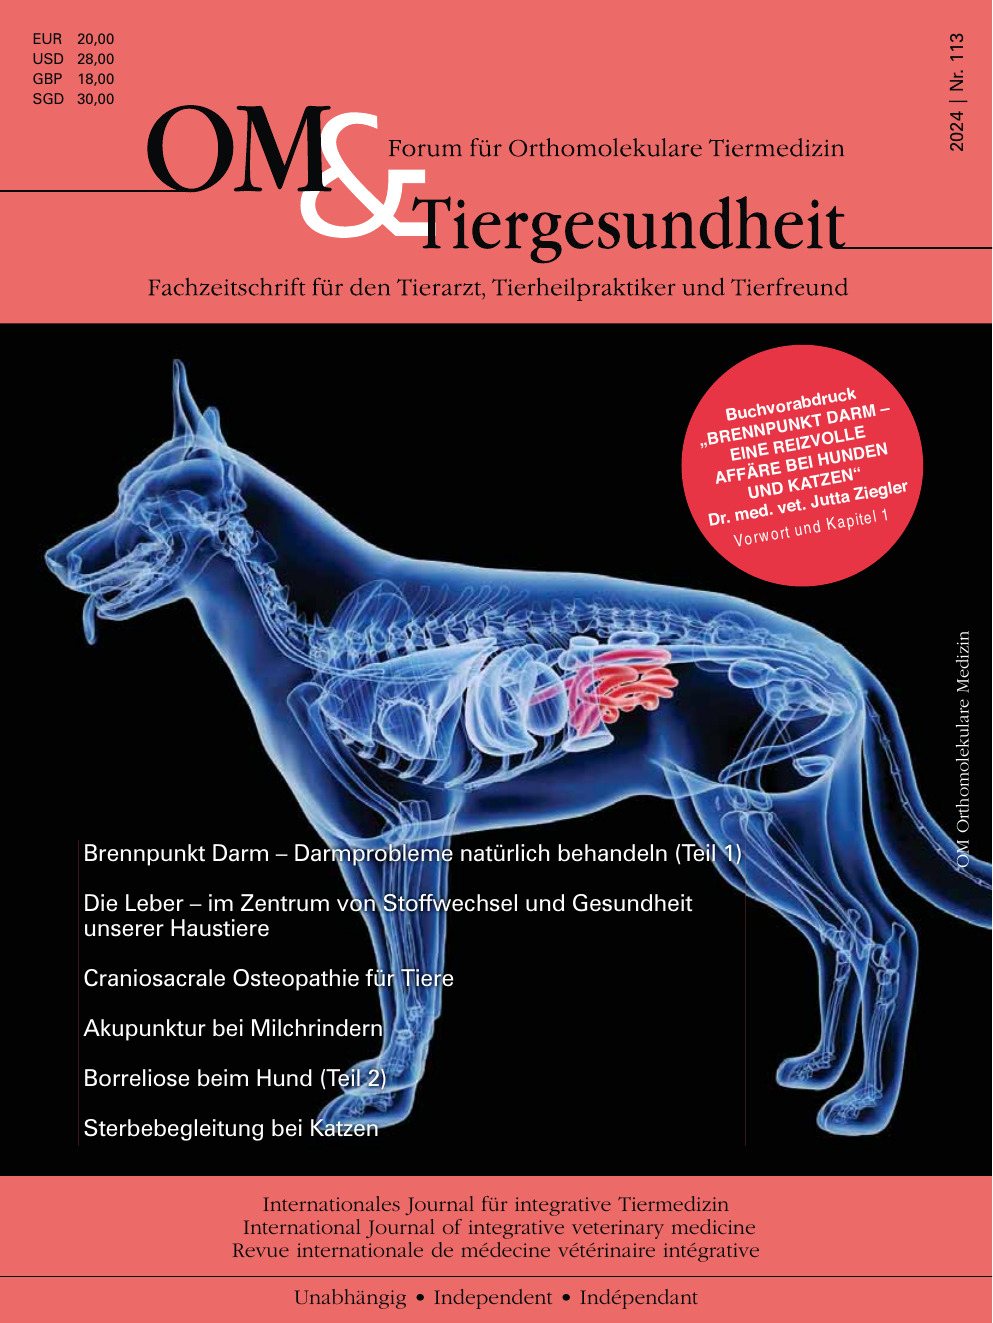 Craniosacrale Osteopathie für Tiere